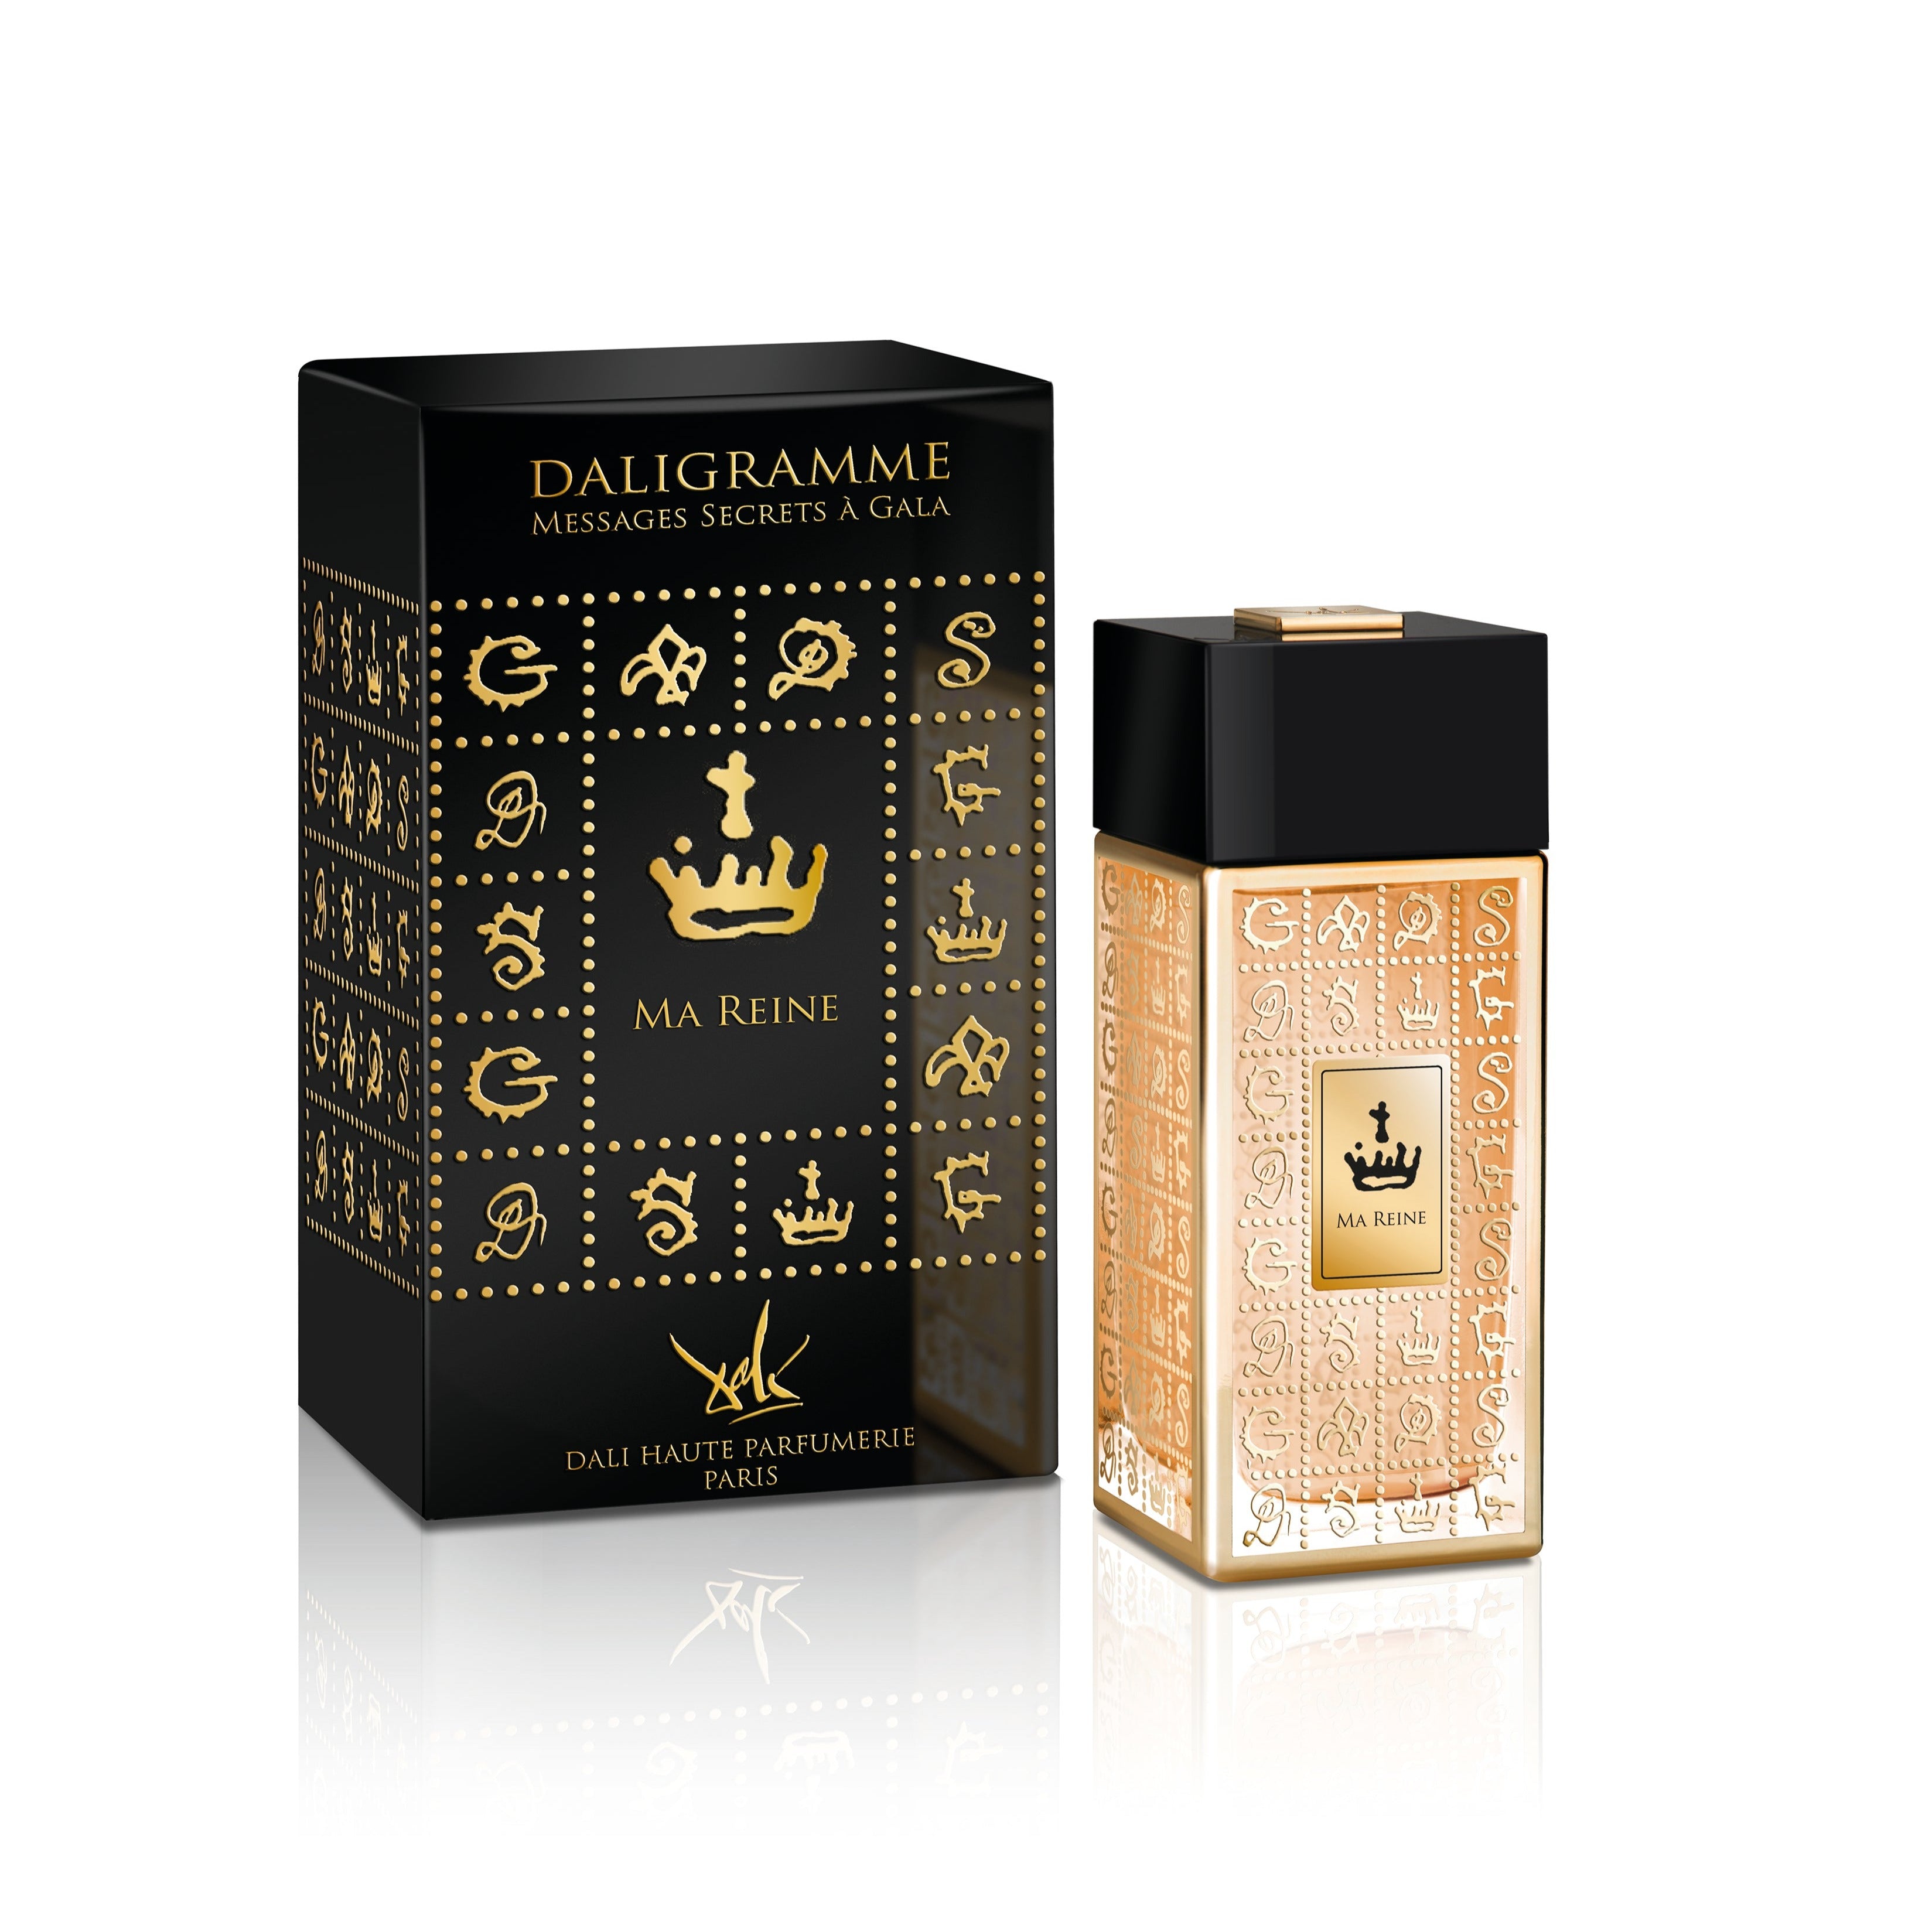 Ma Reine Eau de Parfum 100ml Bottle and Box by Dalí Haute Parfumerie